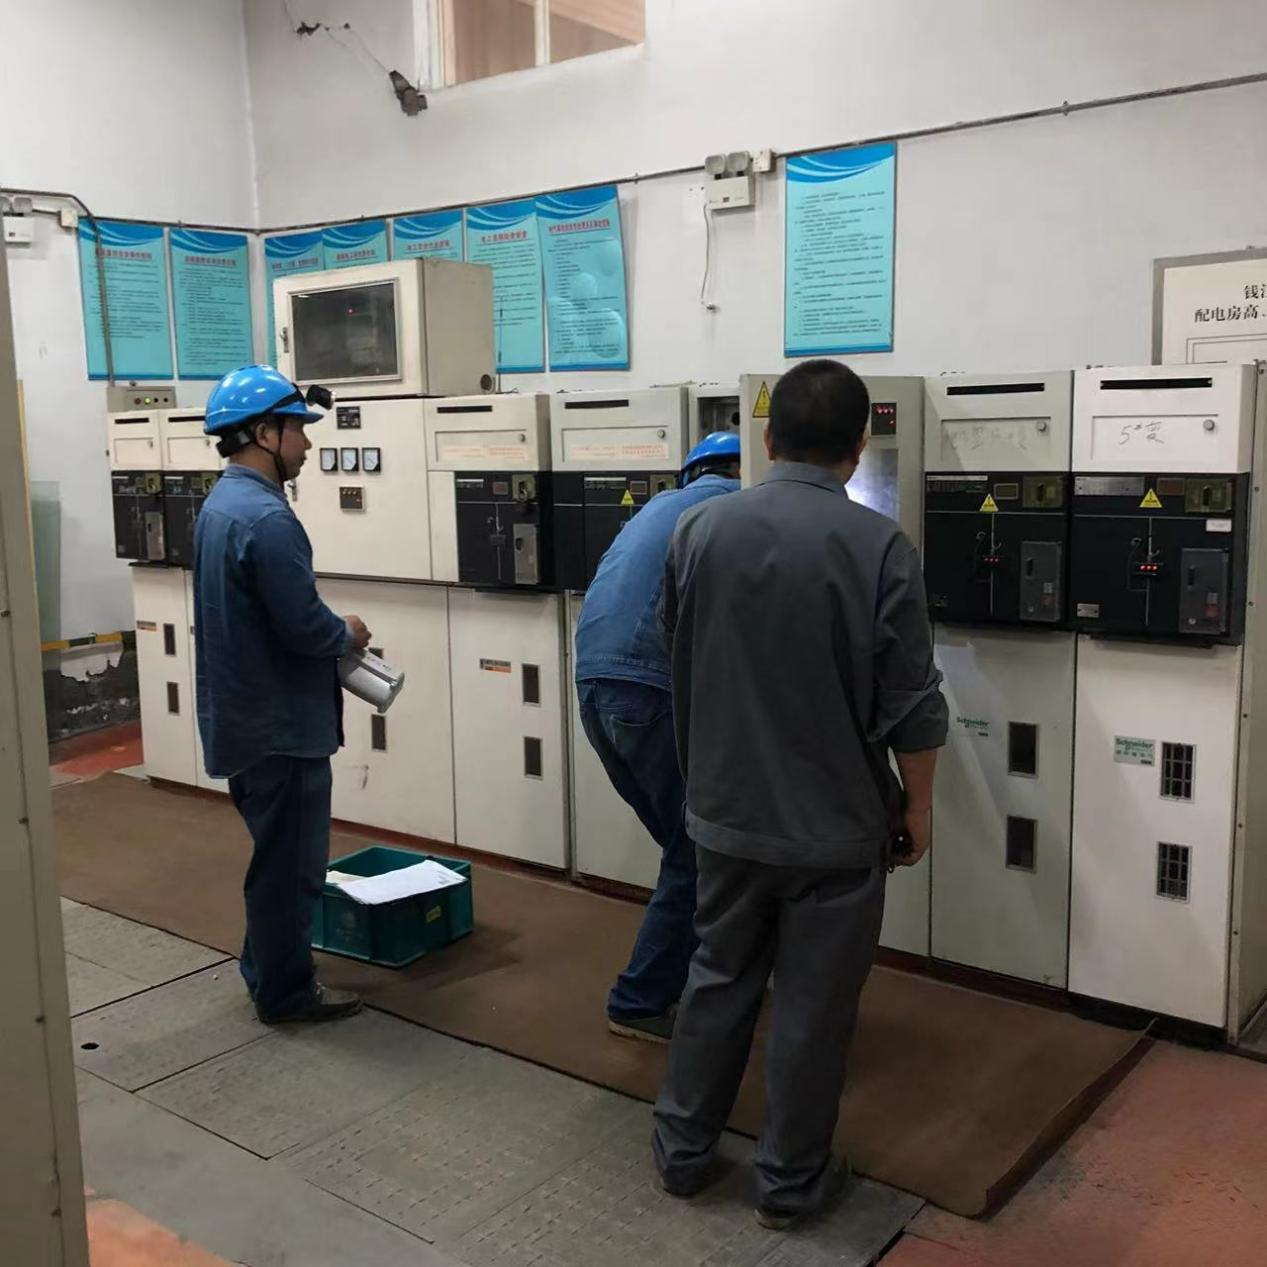 钱江商城更换老旧电表 ——筑牢用电安全防线